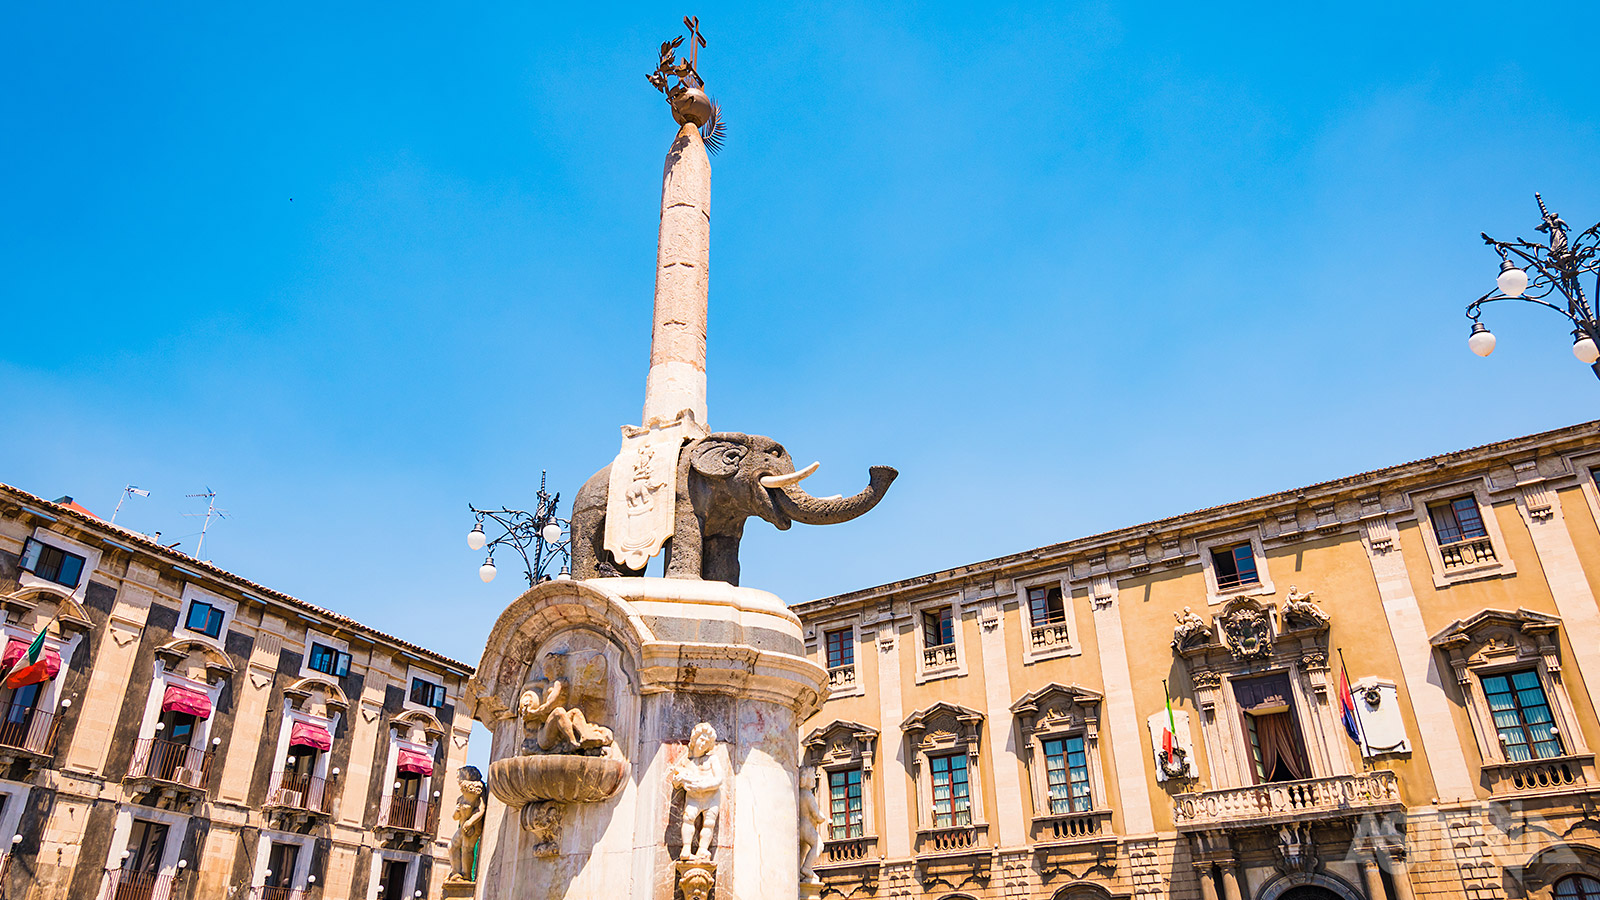 De Fontana dell'Elefante of Olifantenfontein is het symbool van Catania